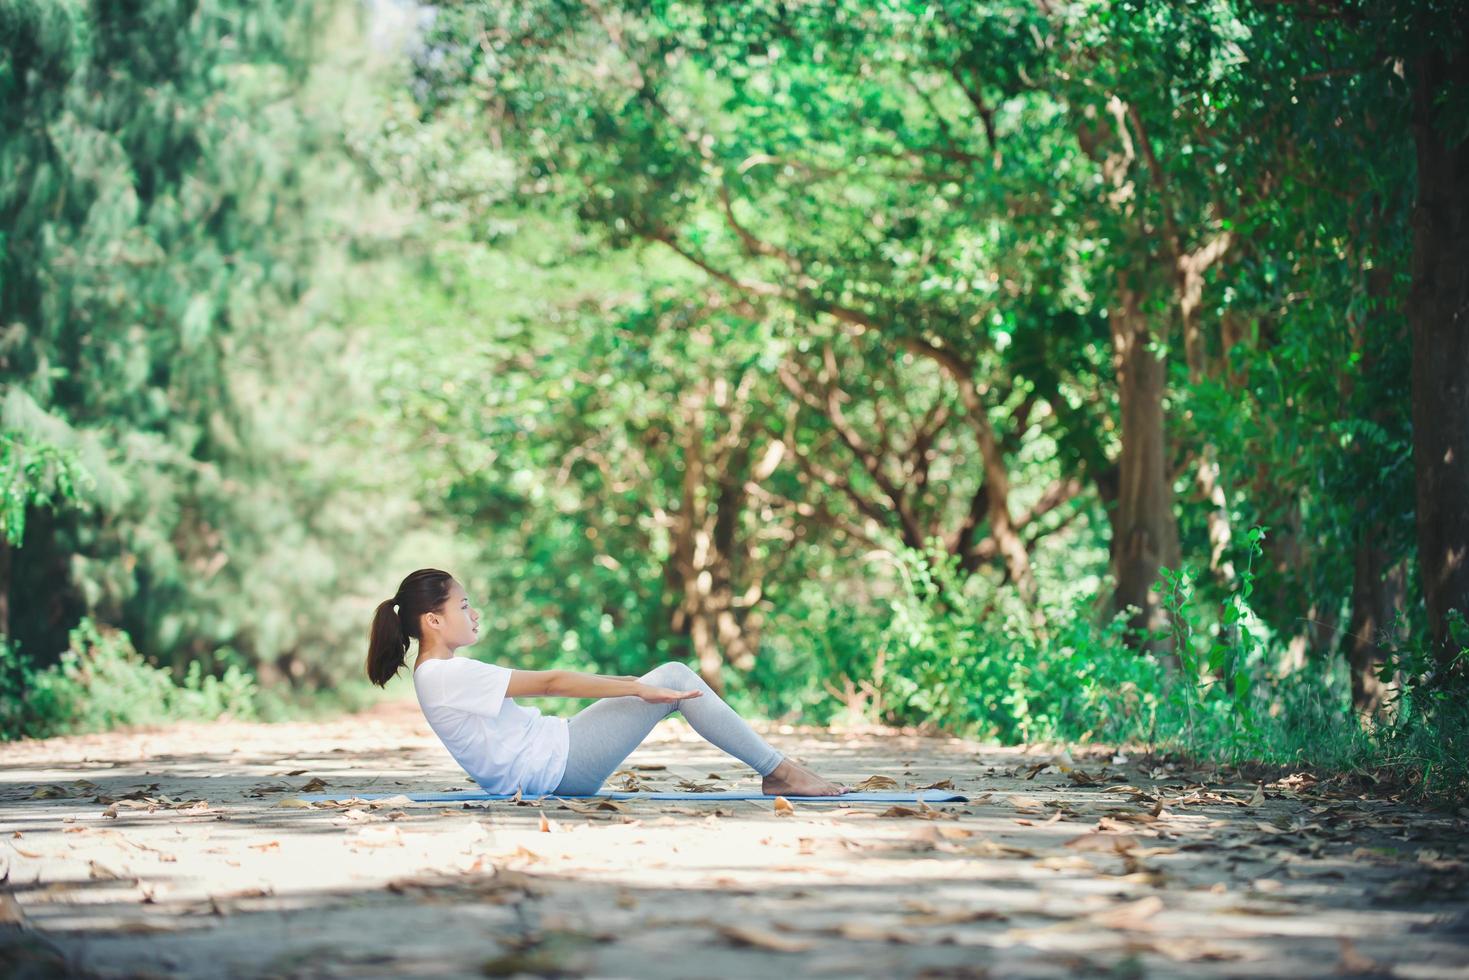 giovane donna asiatica che fa yoga al mattino al parco. sano foto